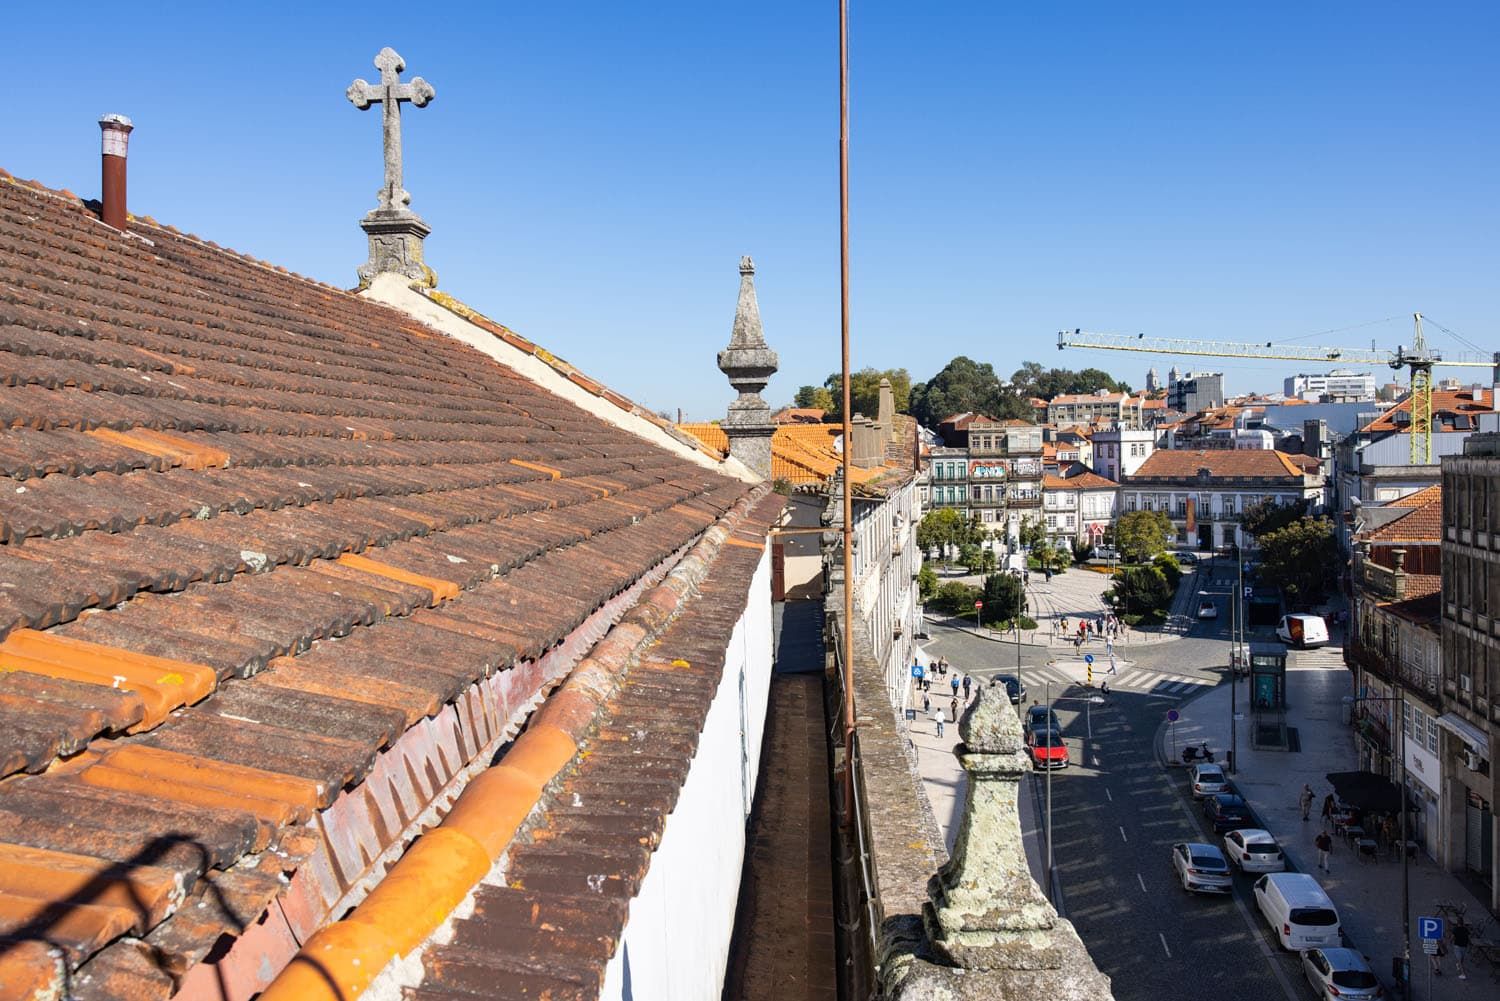 Igreja do Carmo Rooftop | 2 Days in Porto Itinerary